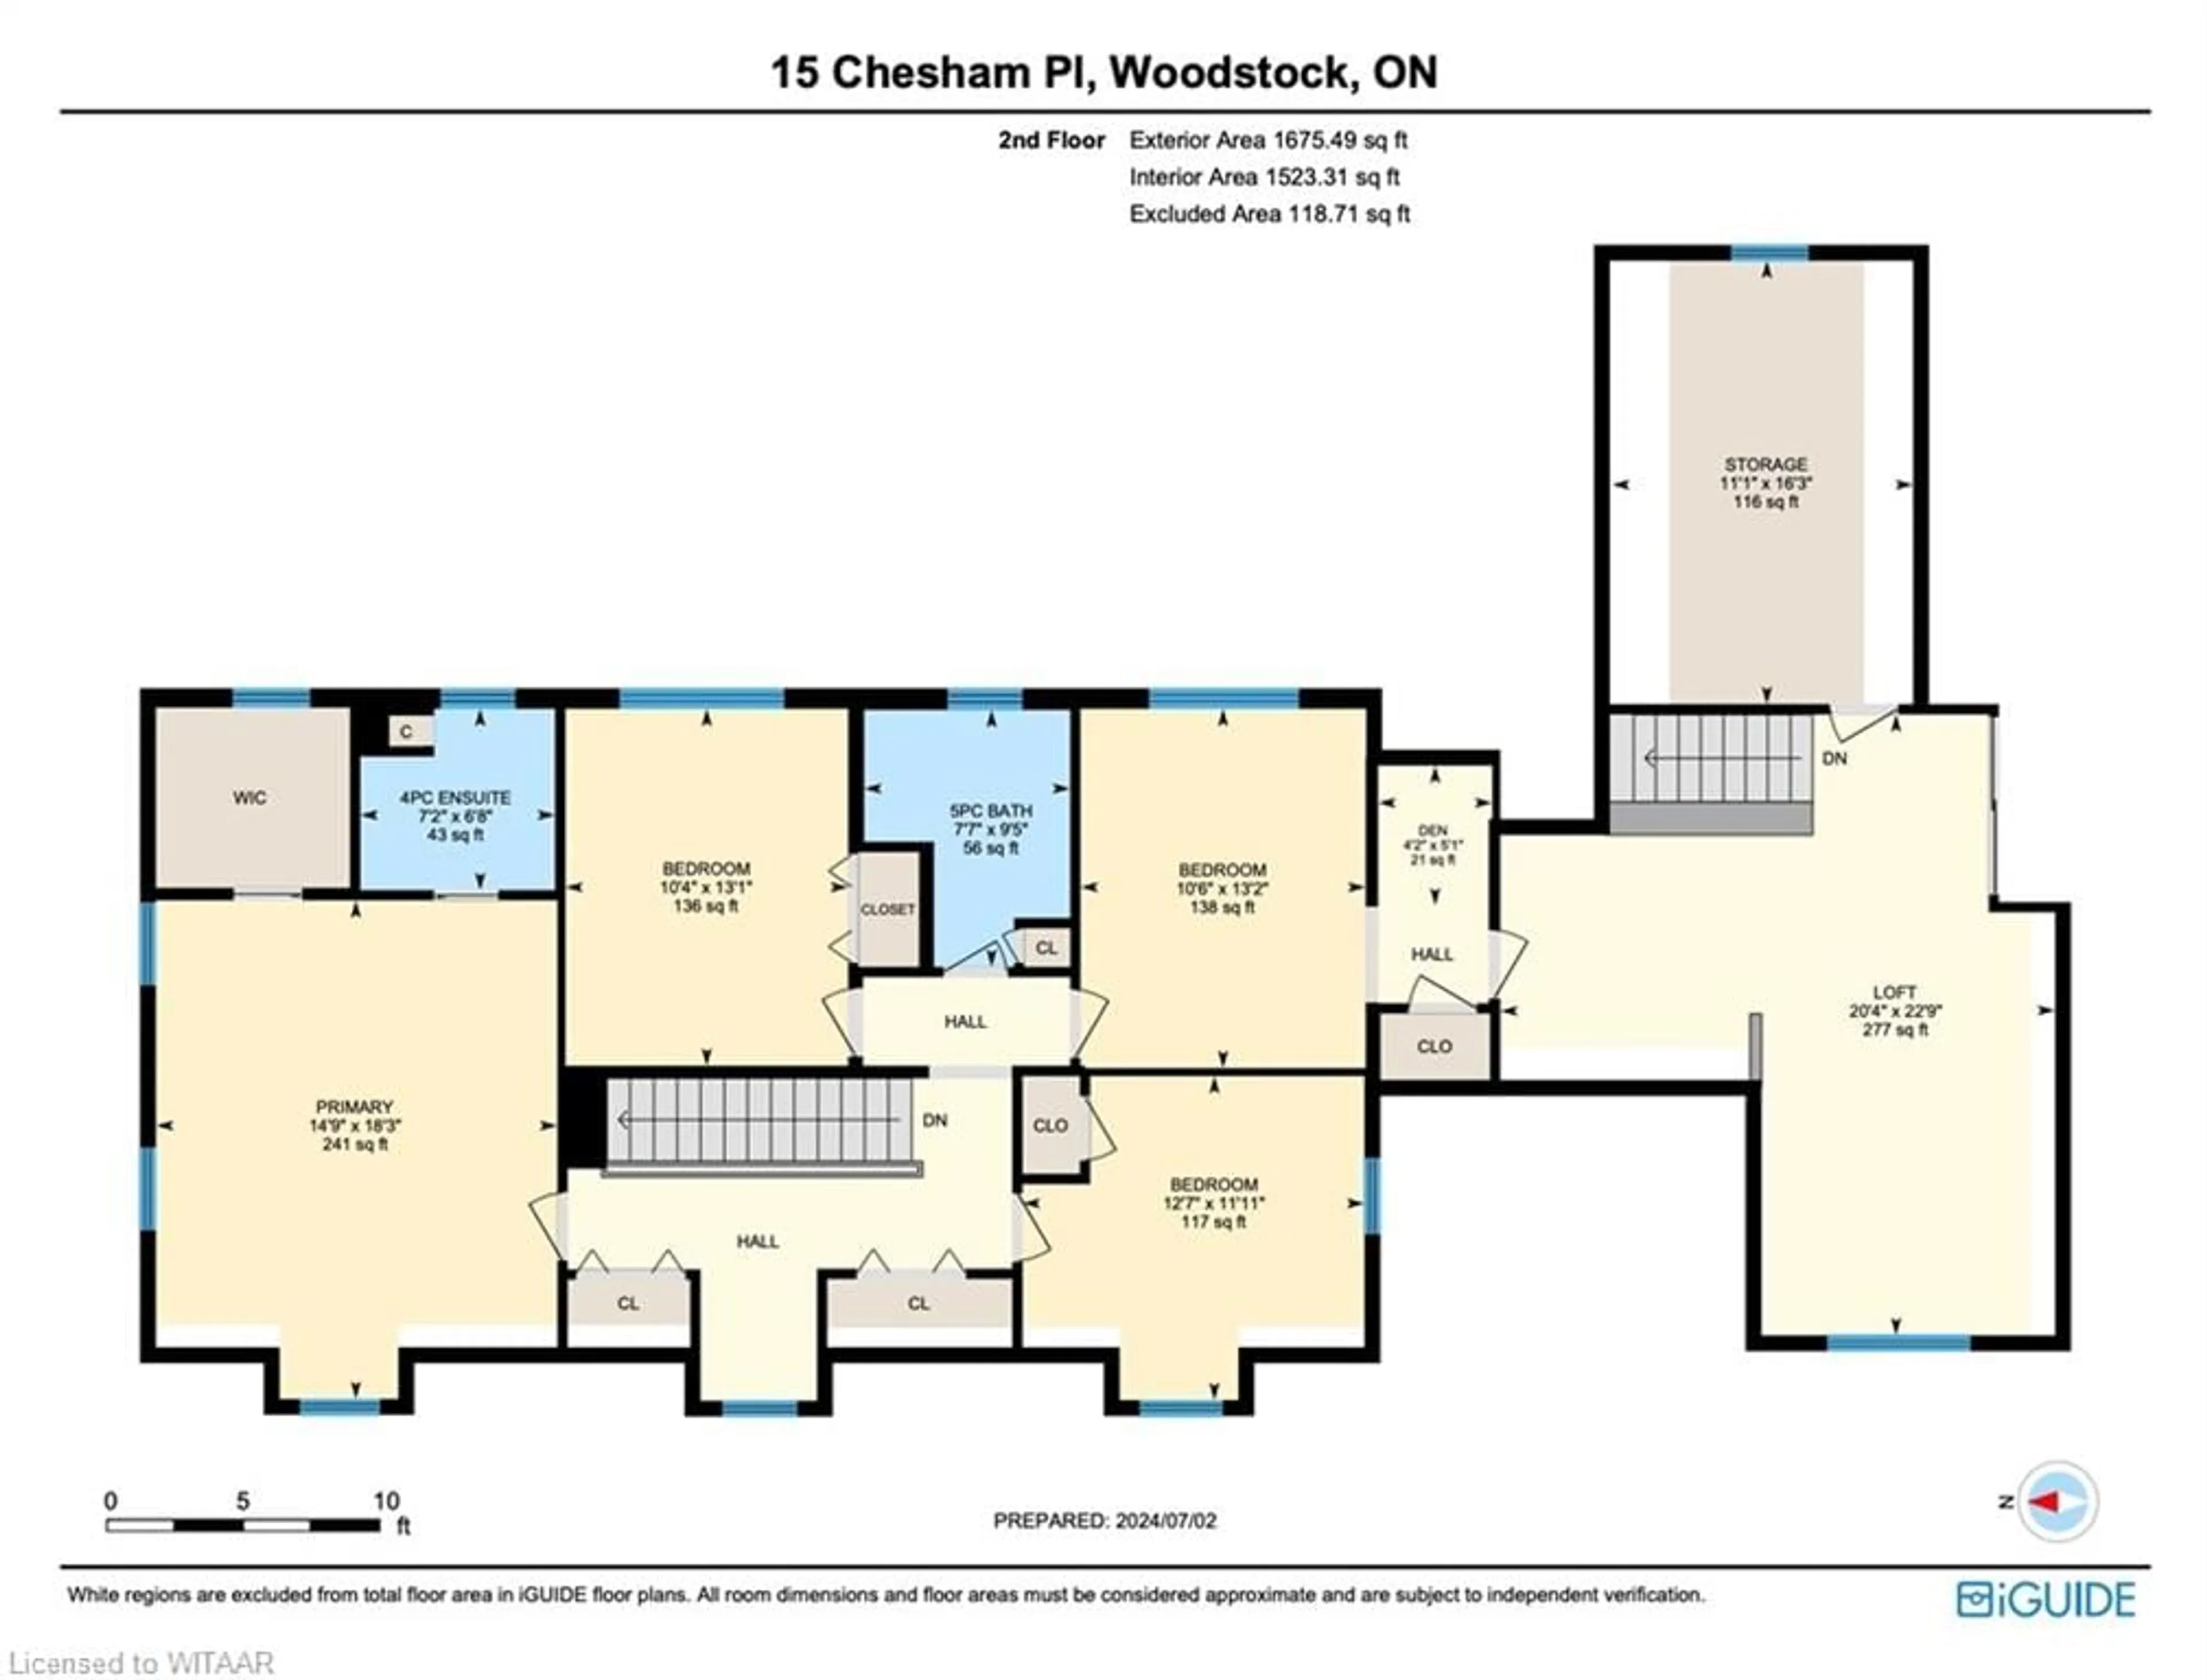 Floor plan for 15 Chesham Pl, Woodstock Ontario N4S 4Y7